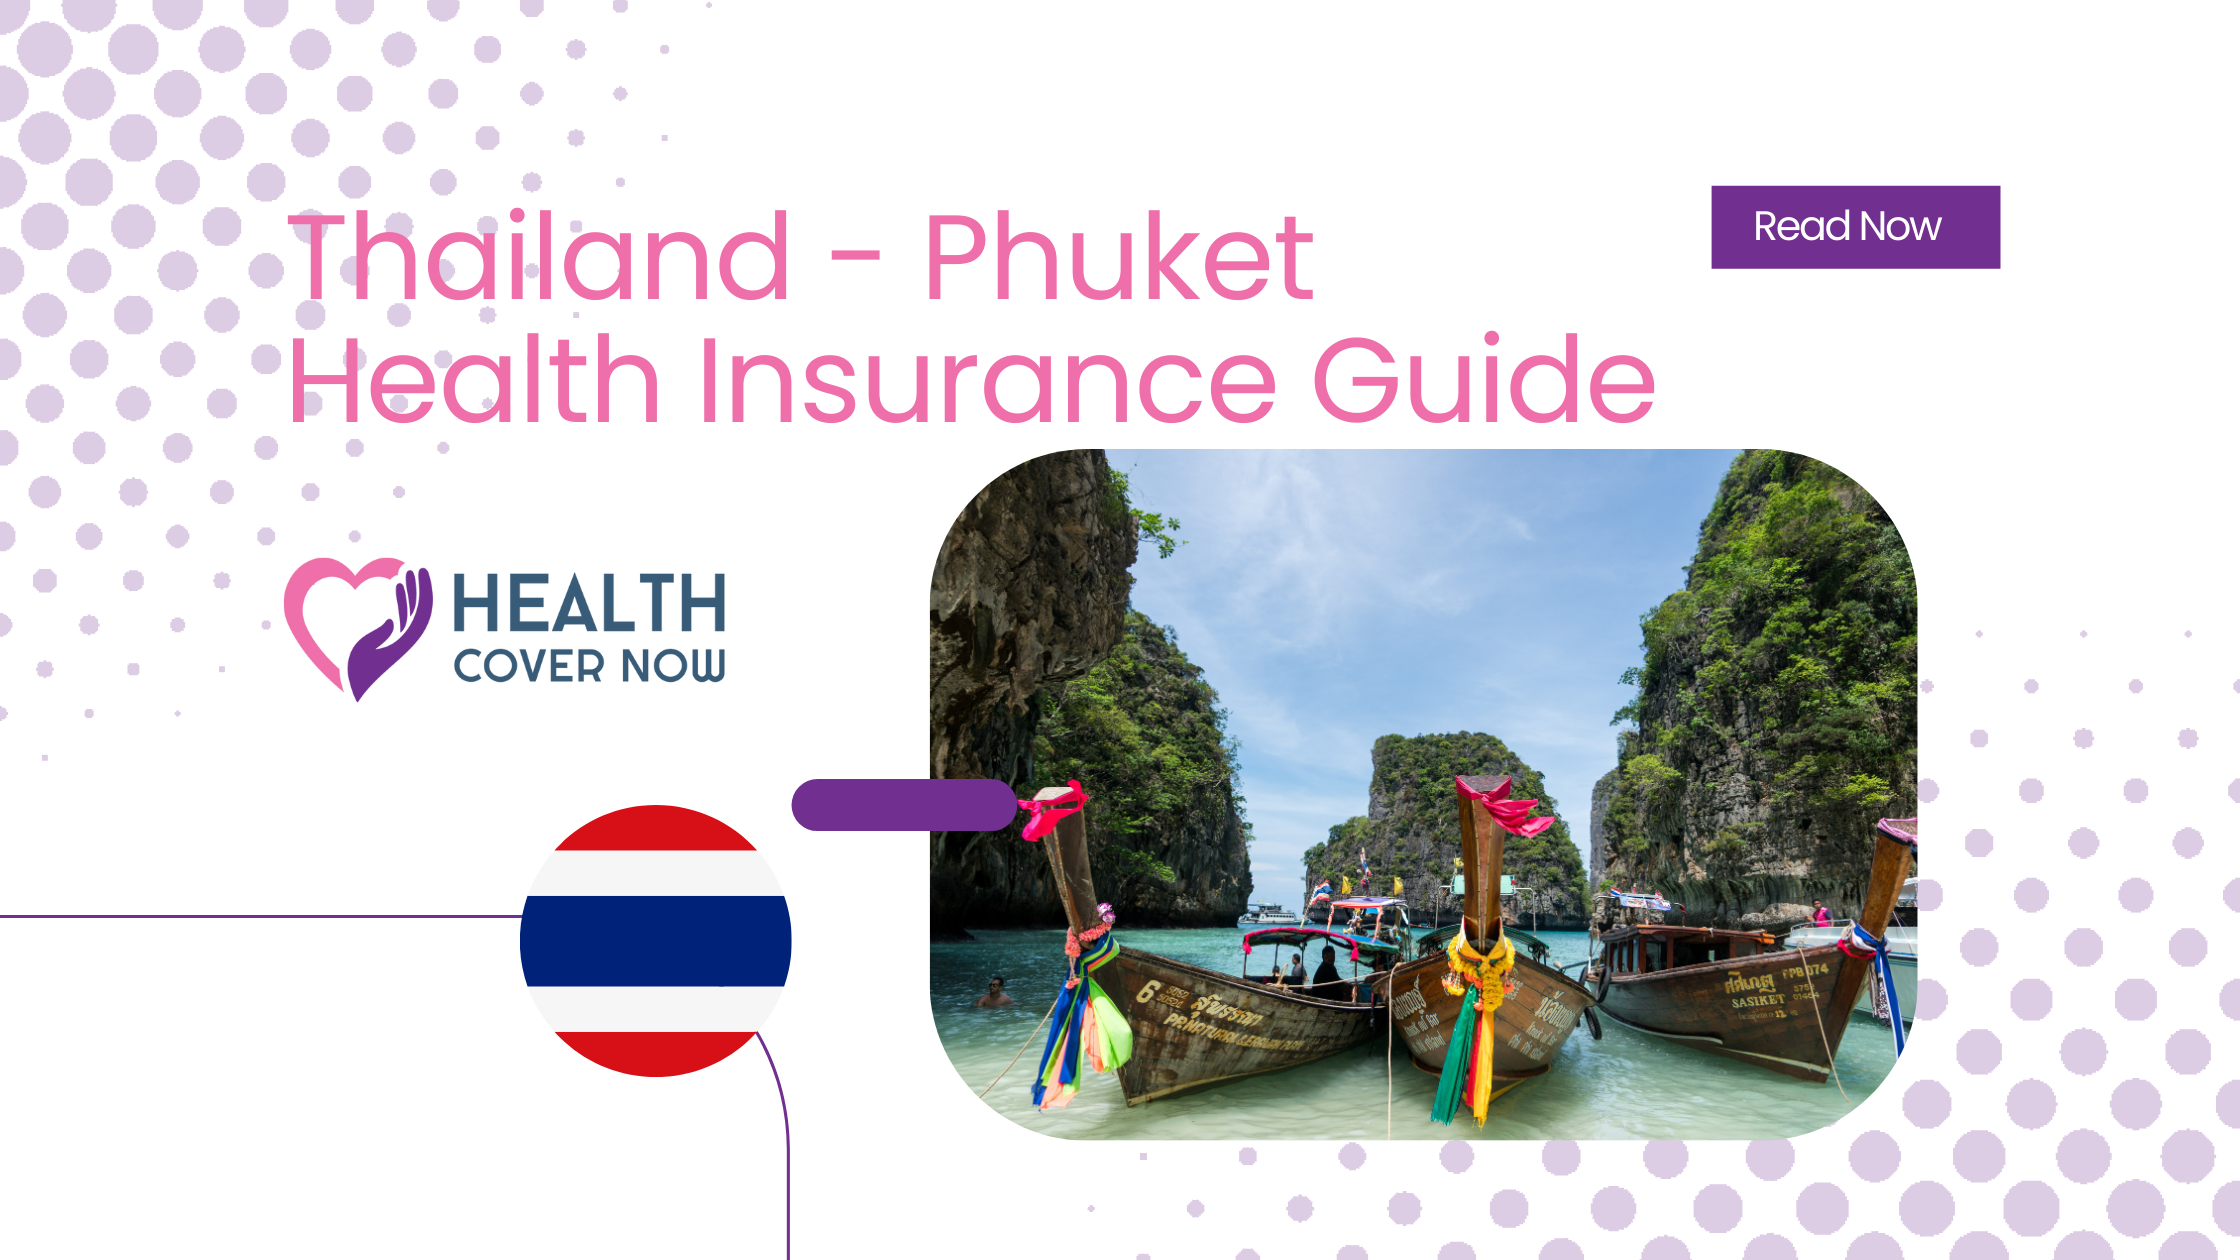 Phuket Health Insurance Guide